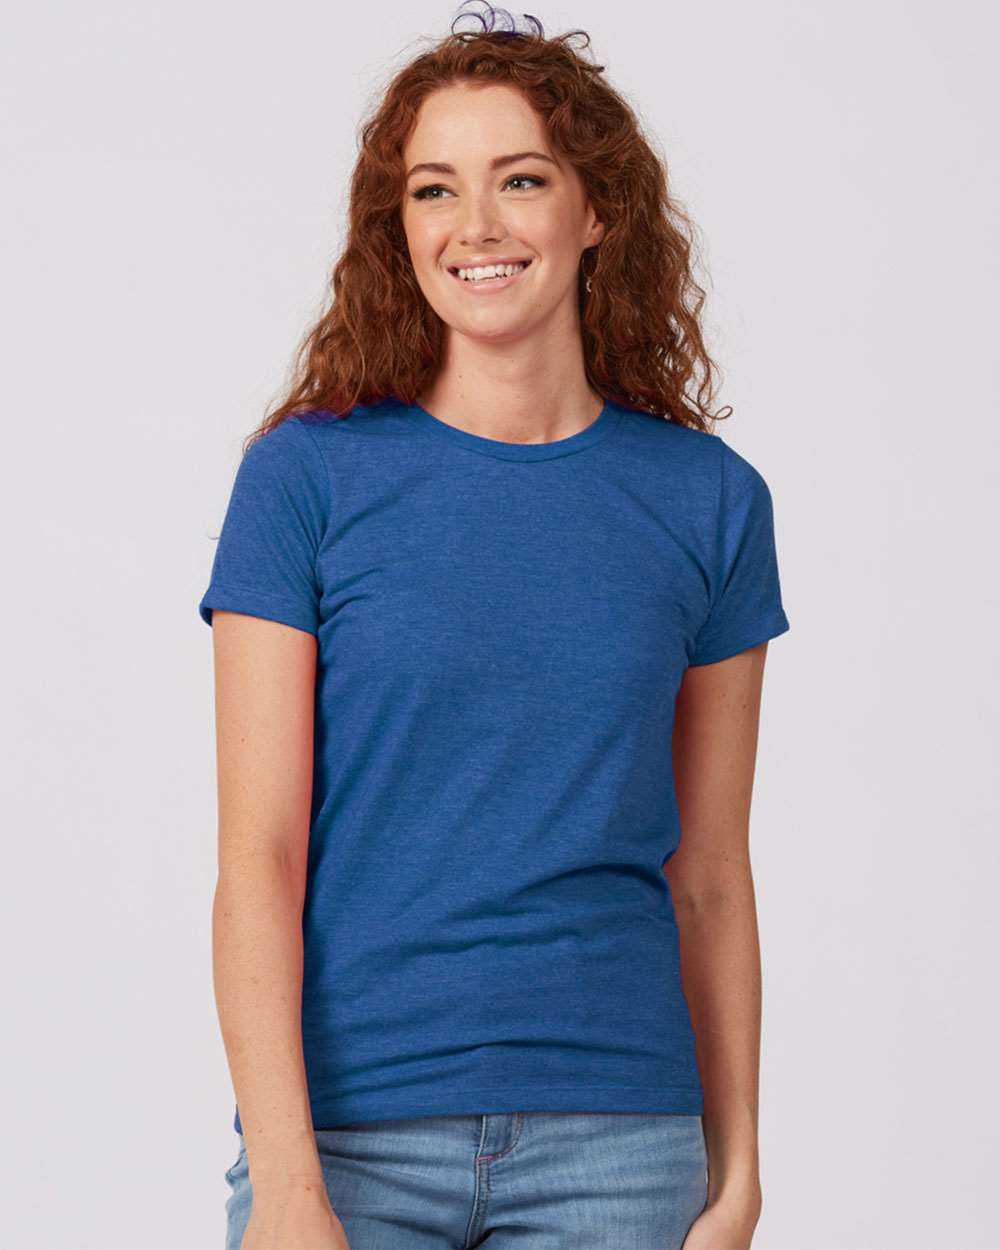 Tultex 542 Women&#39;s Premium Cotton Blend T-Shirt - Royal Heather - HIT a Double